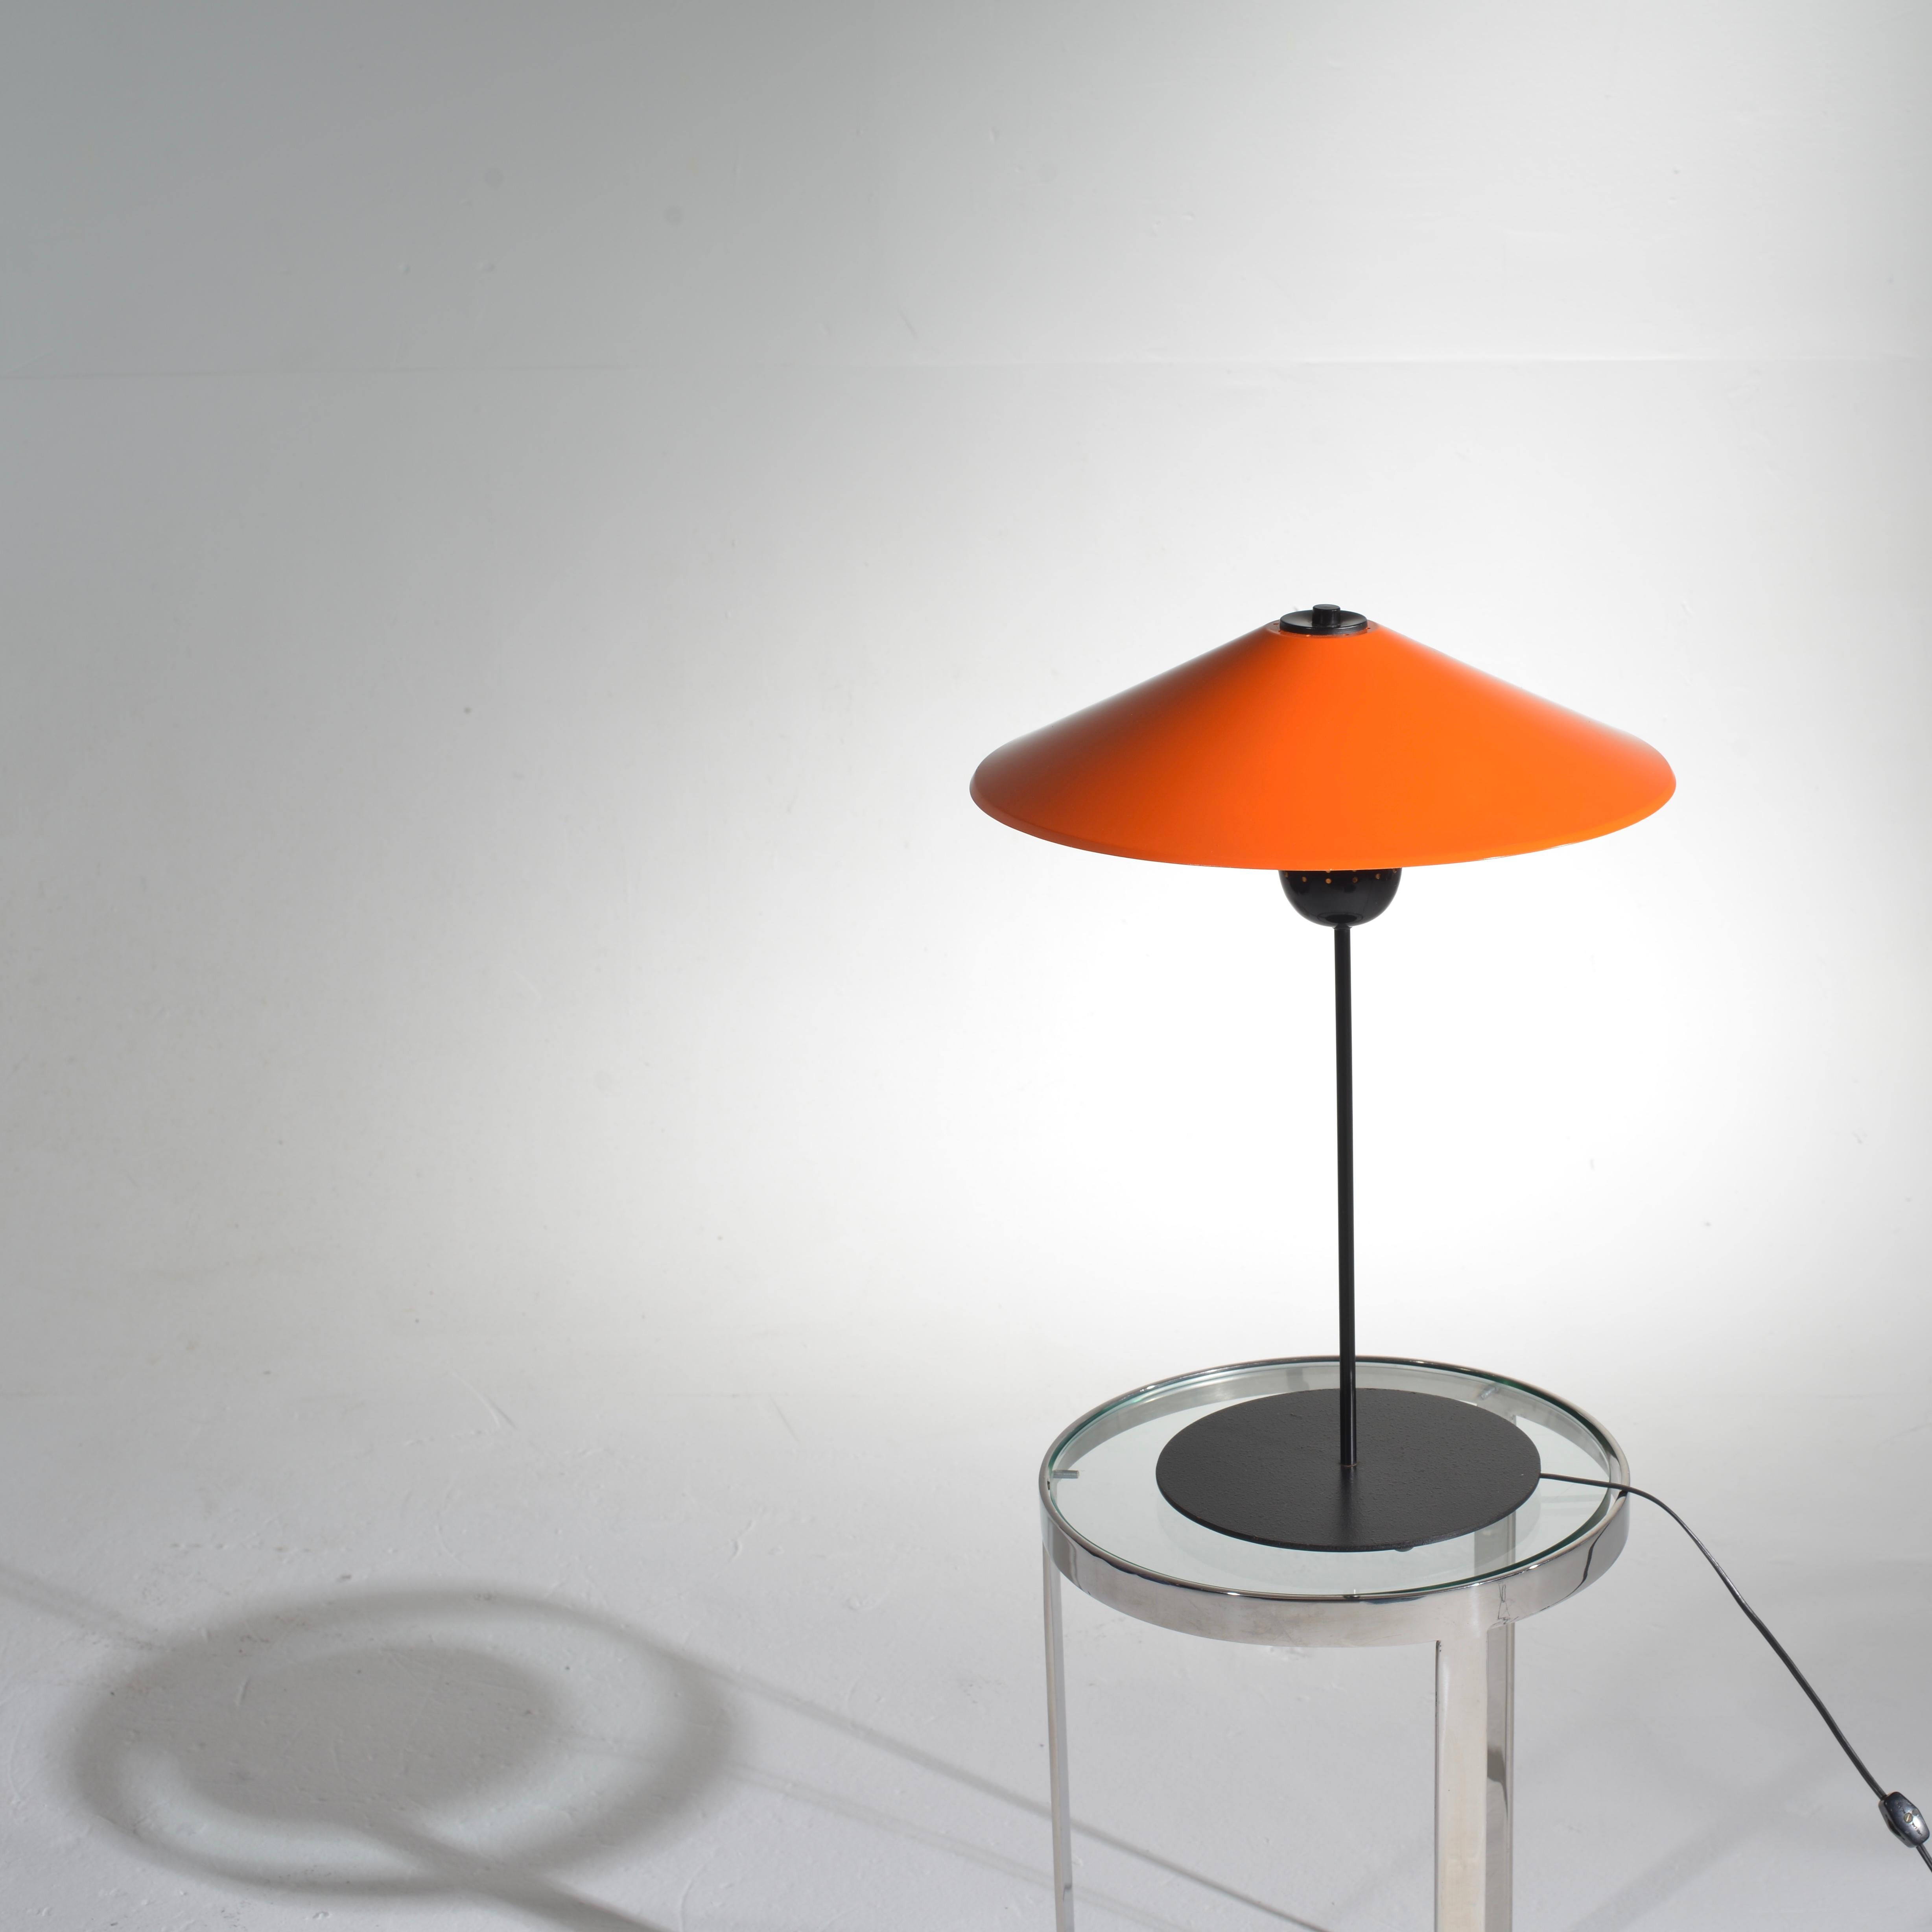 Mid-20th Century Danish Modern Adjustable Orange Table Lamp